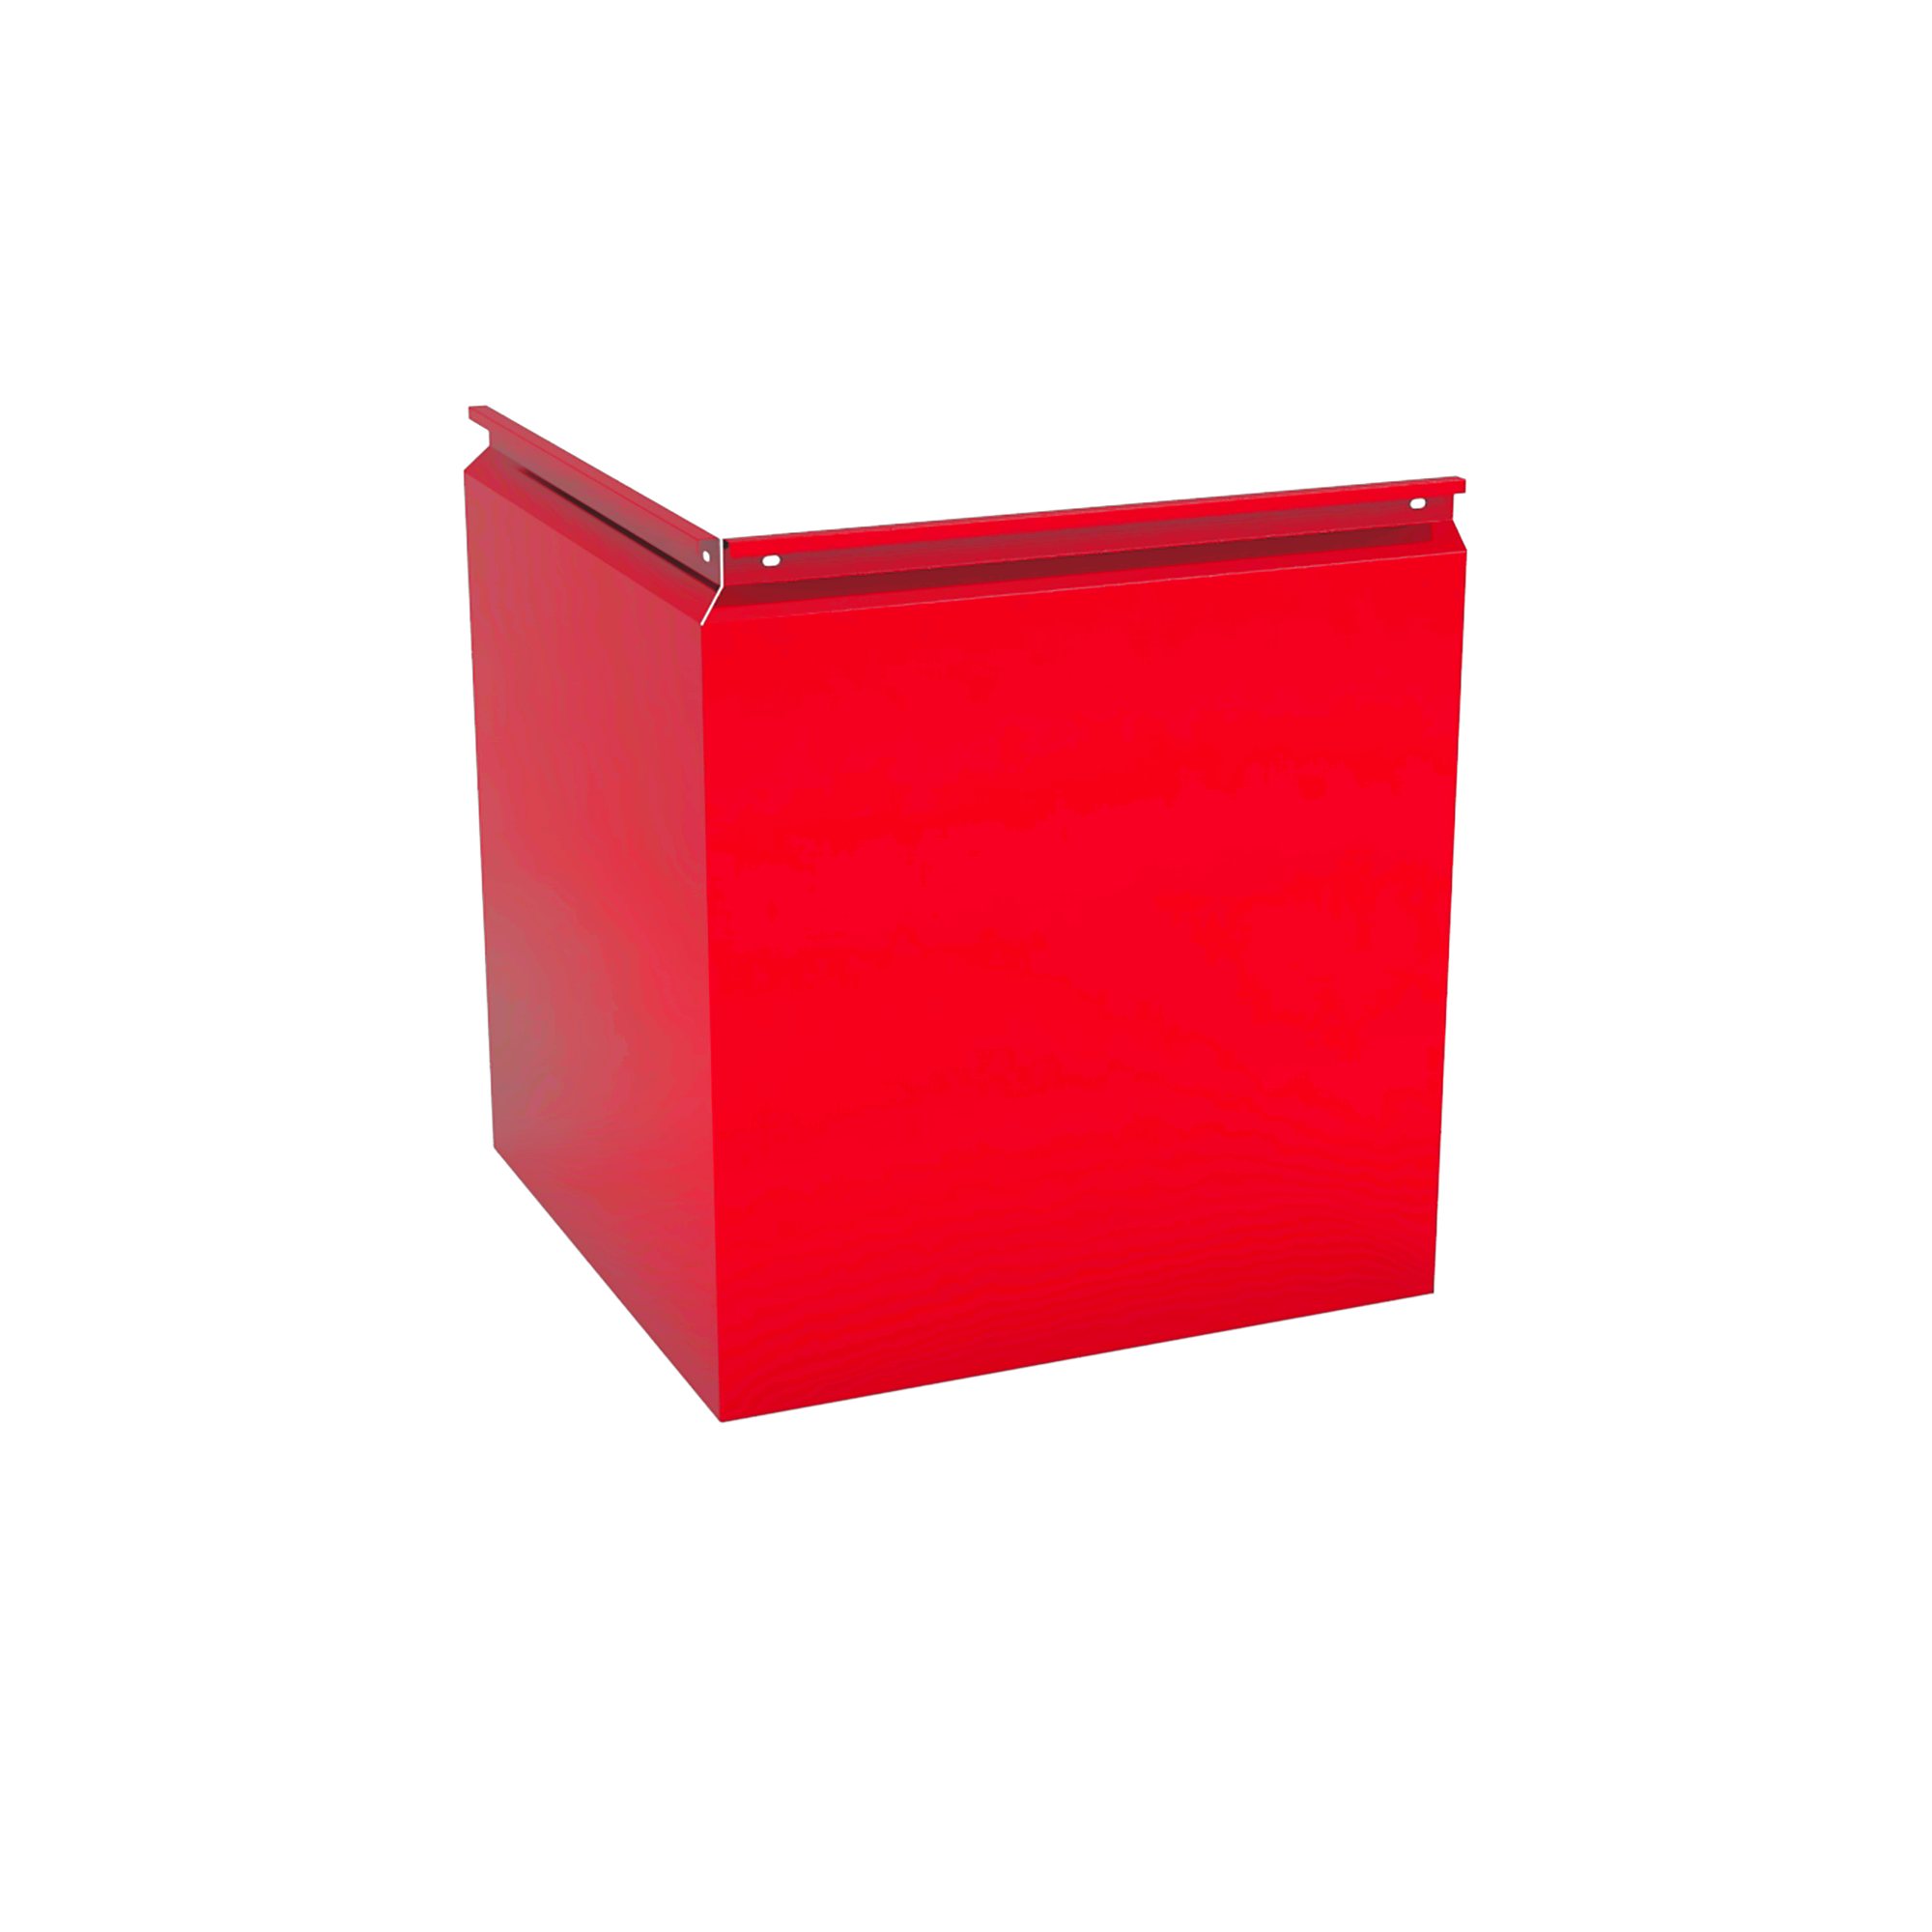 Фасадная кассета Угловая 340 Транспортный красный 0,9 мм Фасадные кассеты Кровля Сервис